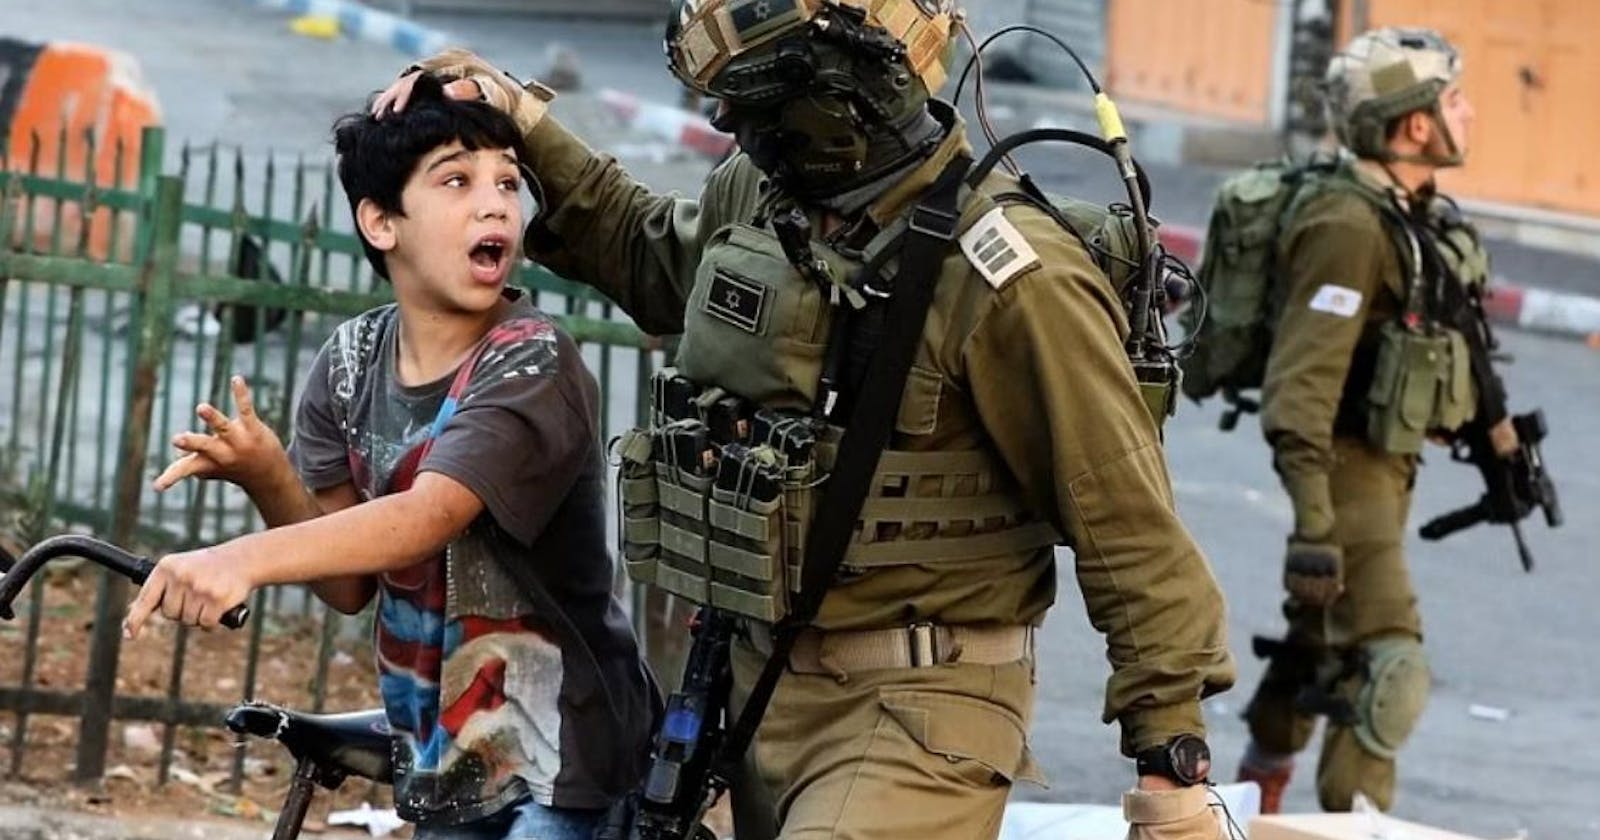 تقرير: تخوف إسرائيلي من تنامي استخدام أطفال فلسطينيين في "أعمال العنف"